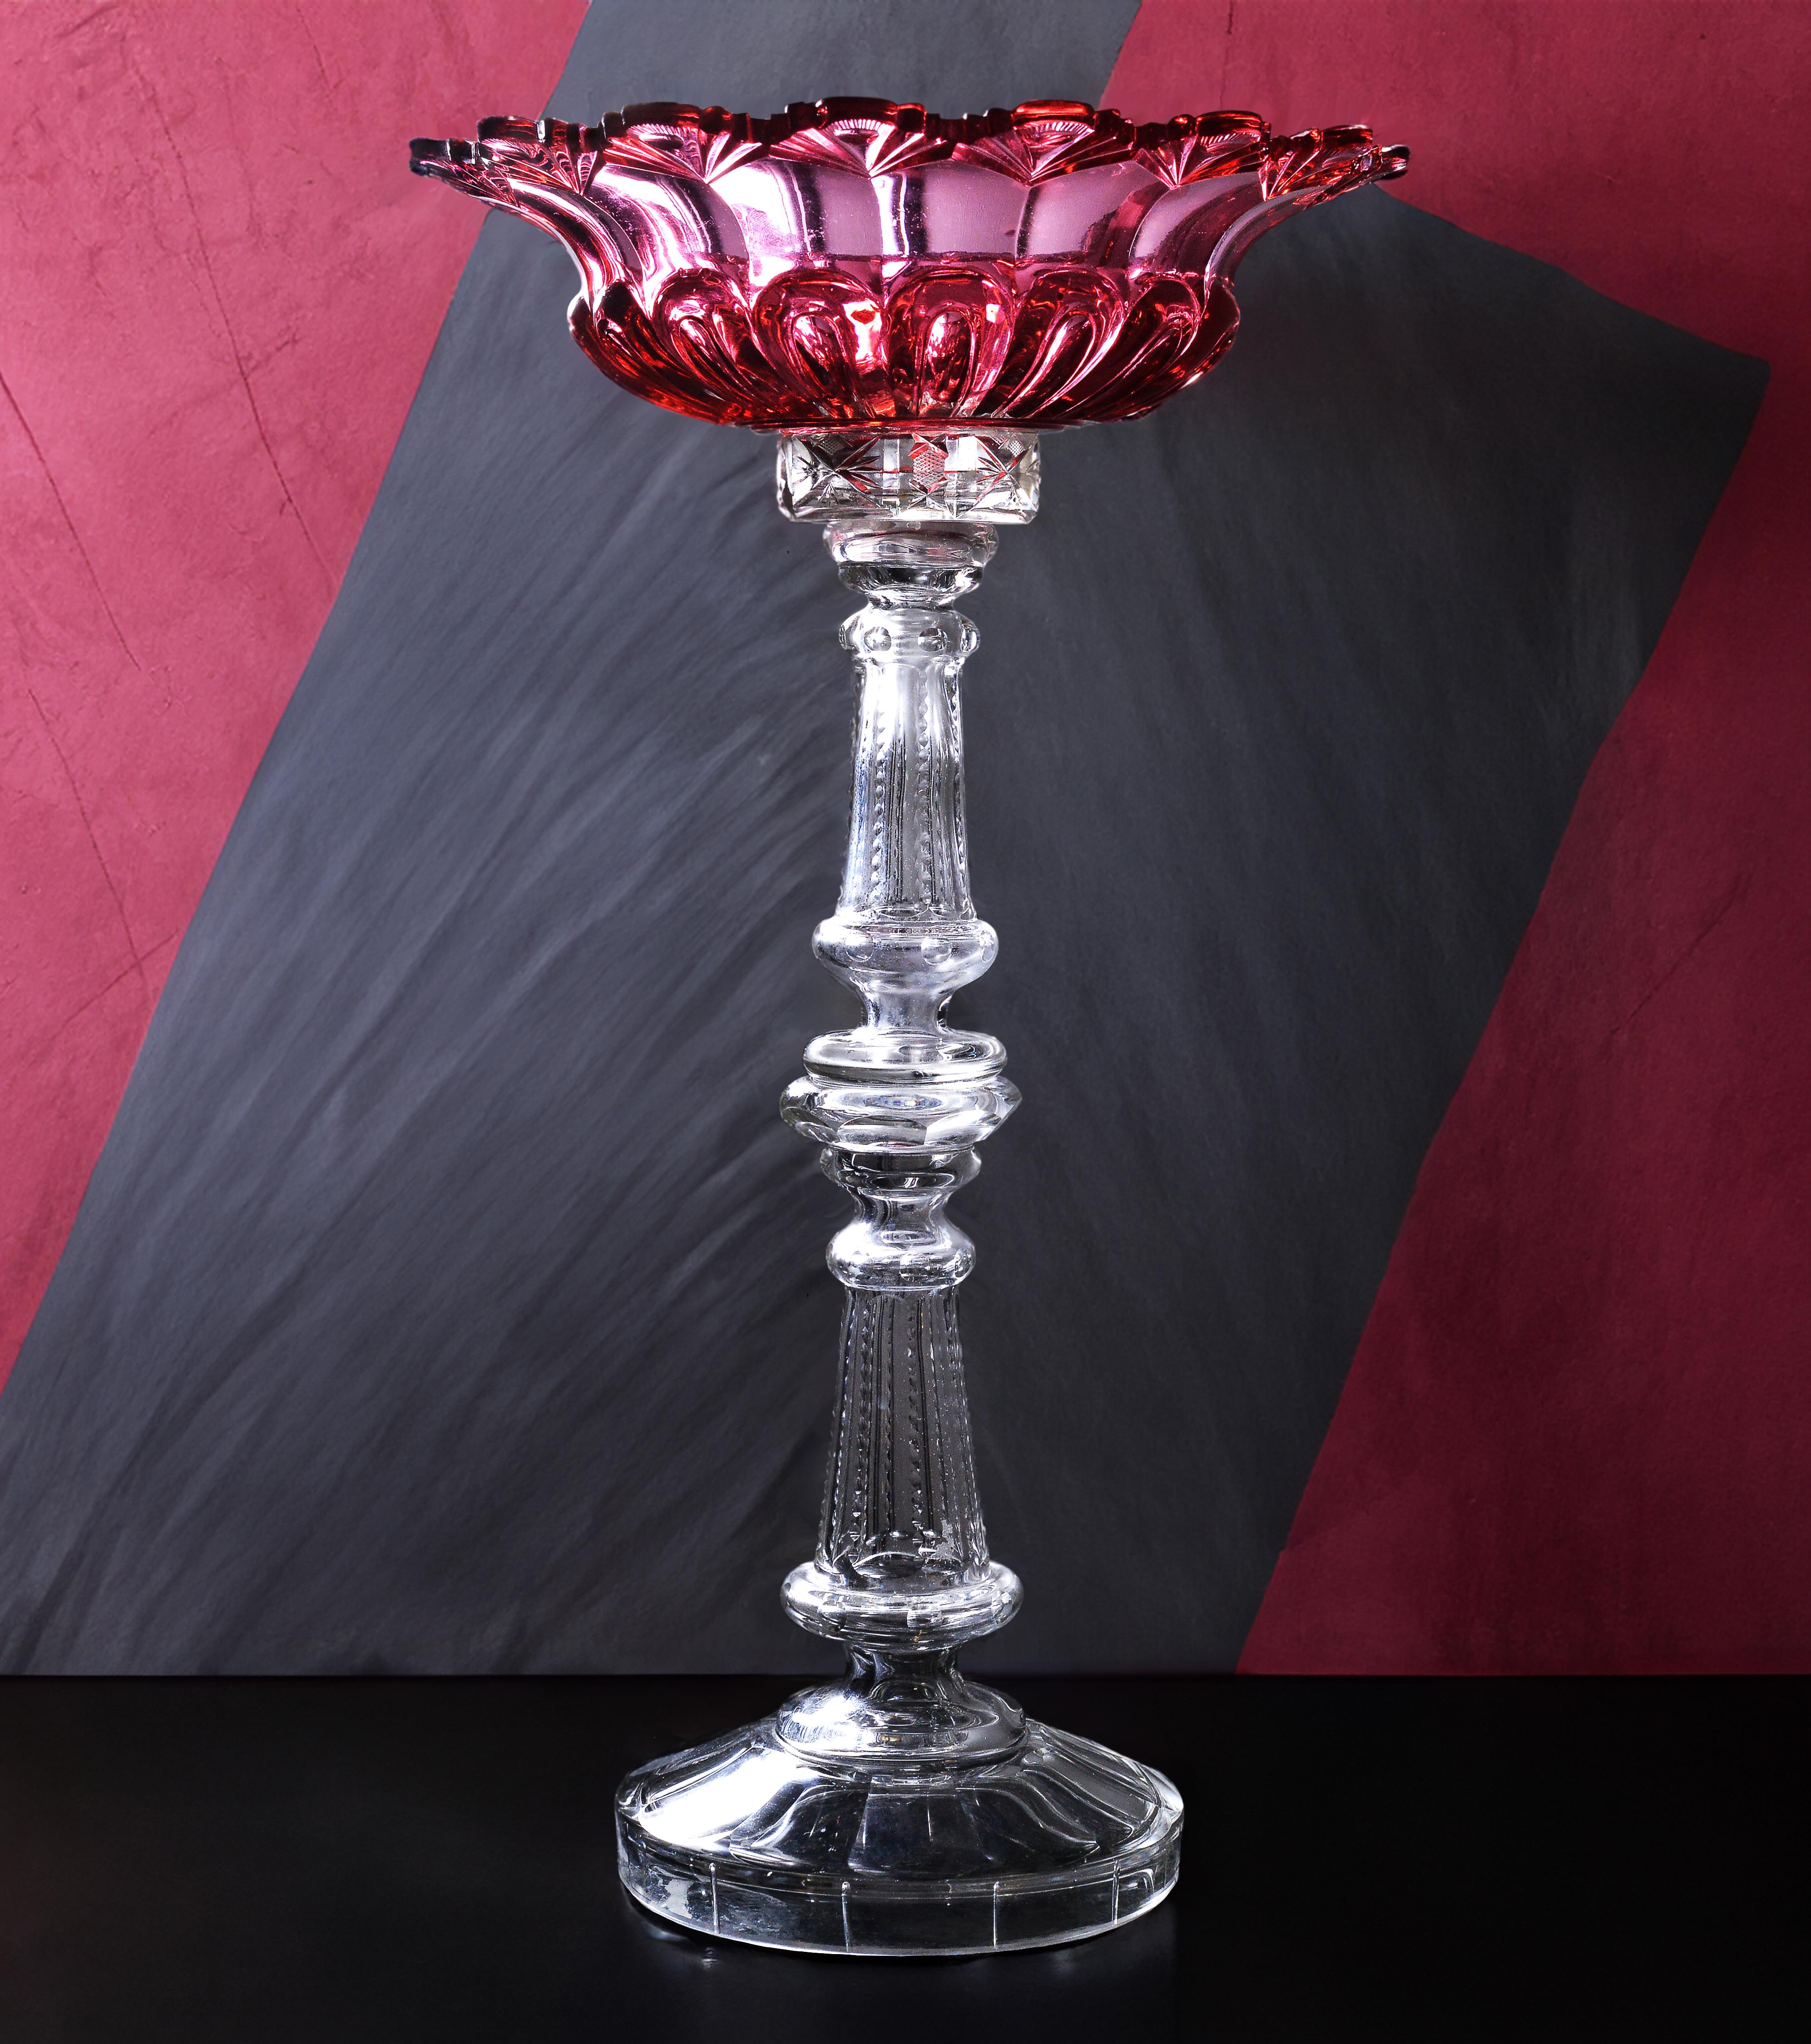 Antique et absolument exclusif, entièrement fabriqué à la main dans la verrerie impériale russe dans la première moitié du 19e siècle. Magnifique combinaison de couleurs, forme unique et architecture du vase à fruits (Tazza). Des œuvres en verre